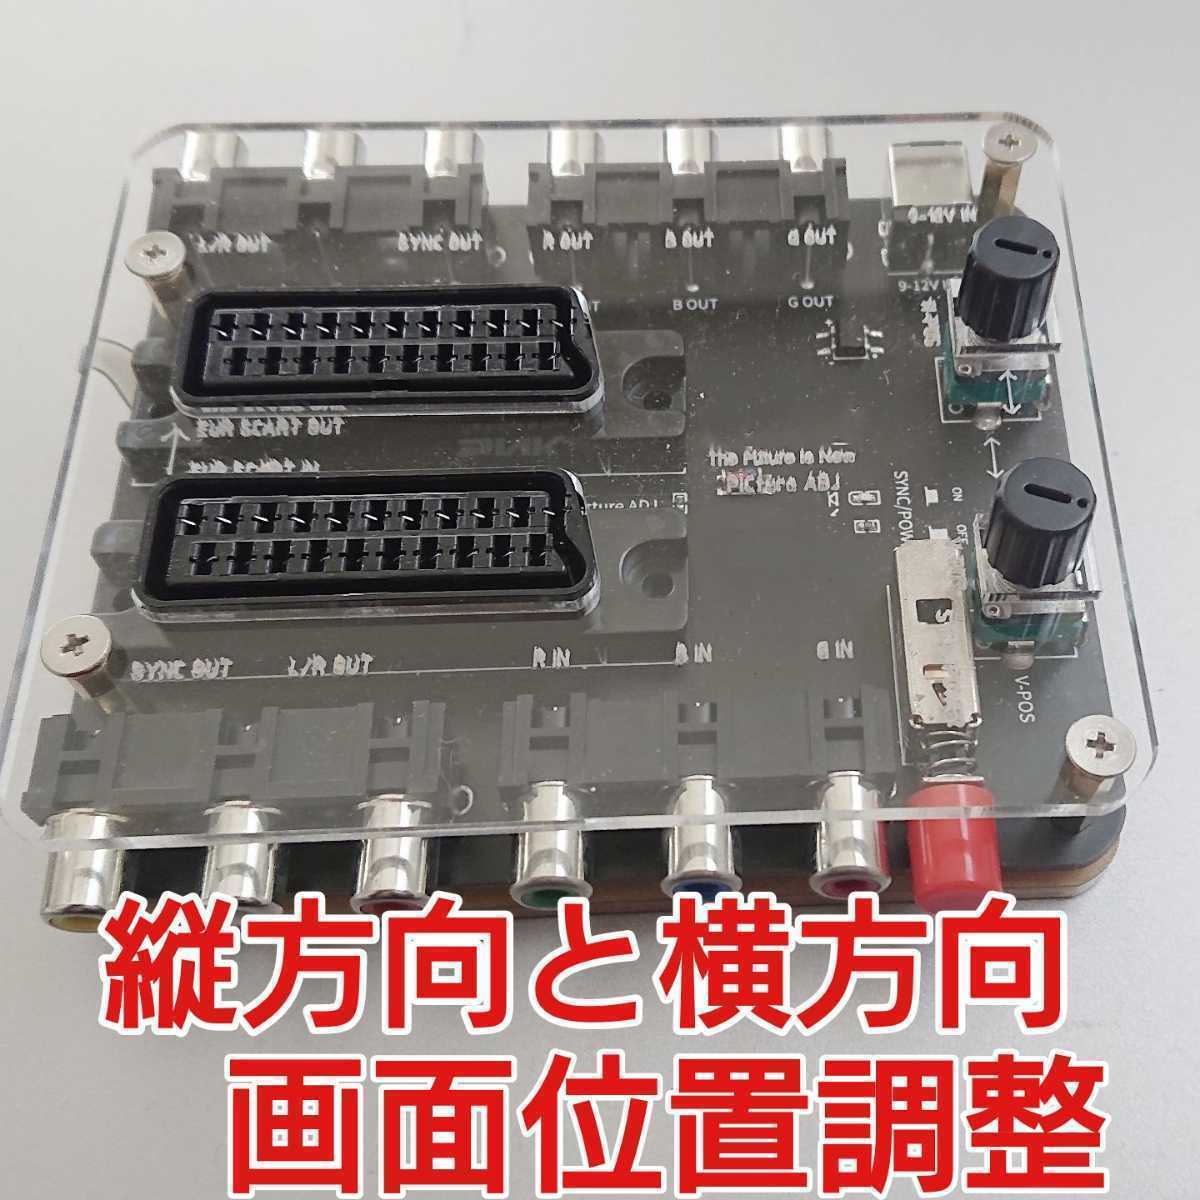 SCART стандарт MSX2 соответствует экран положение регулировка оборудование 15khz соответствует SCART кабель . соответствует не RGB21 булавка положение настройка экран регулировка 